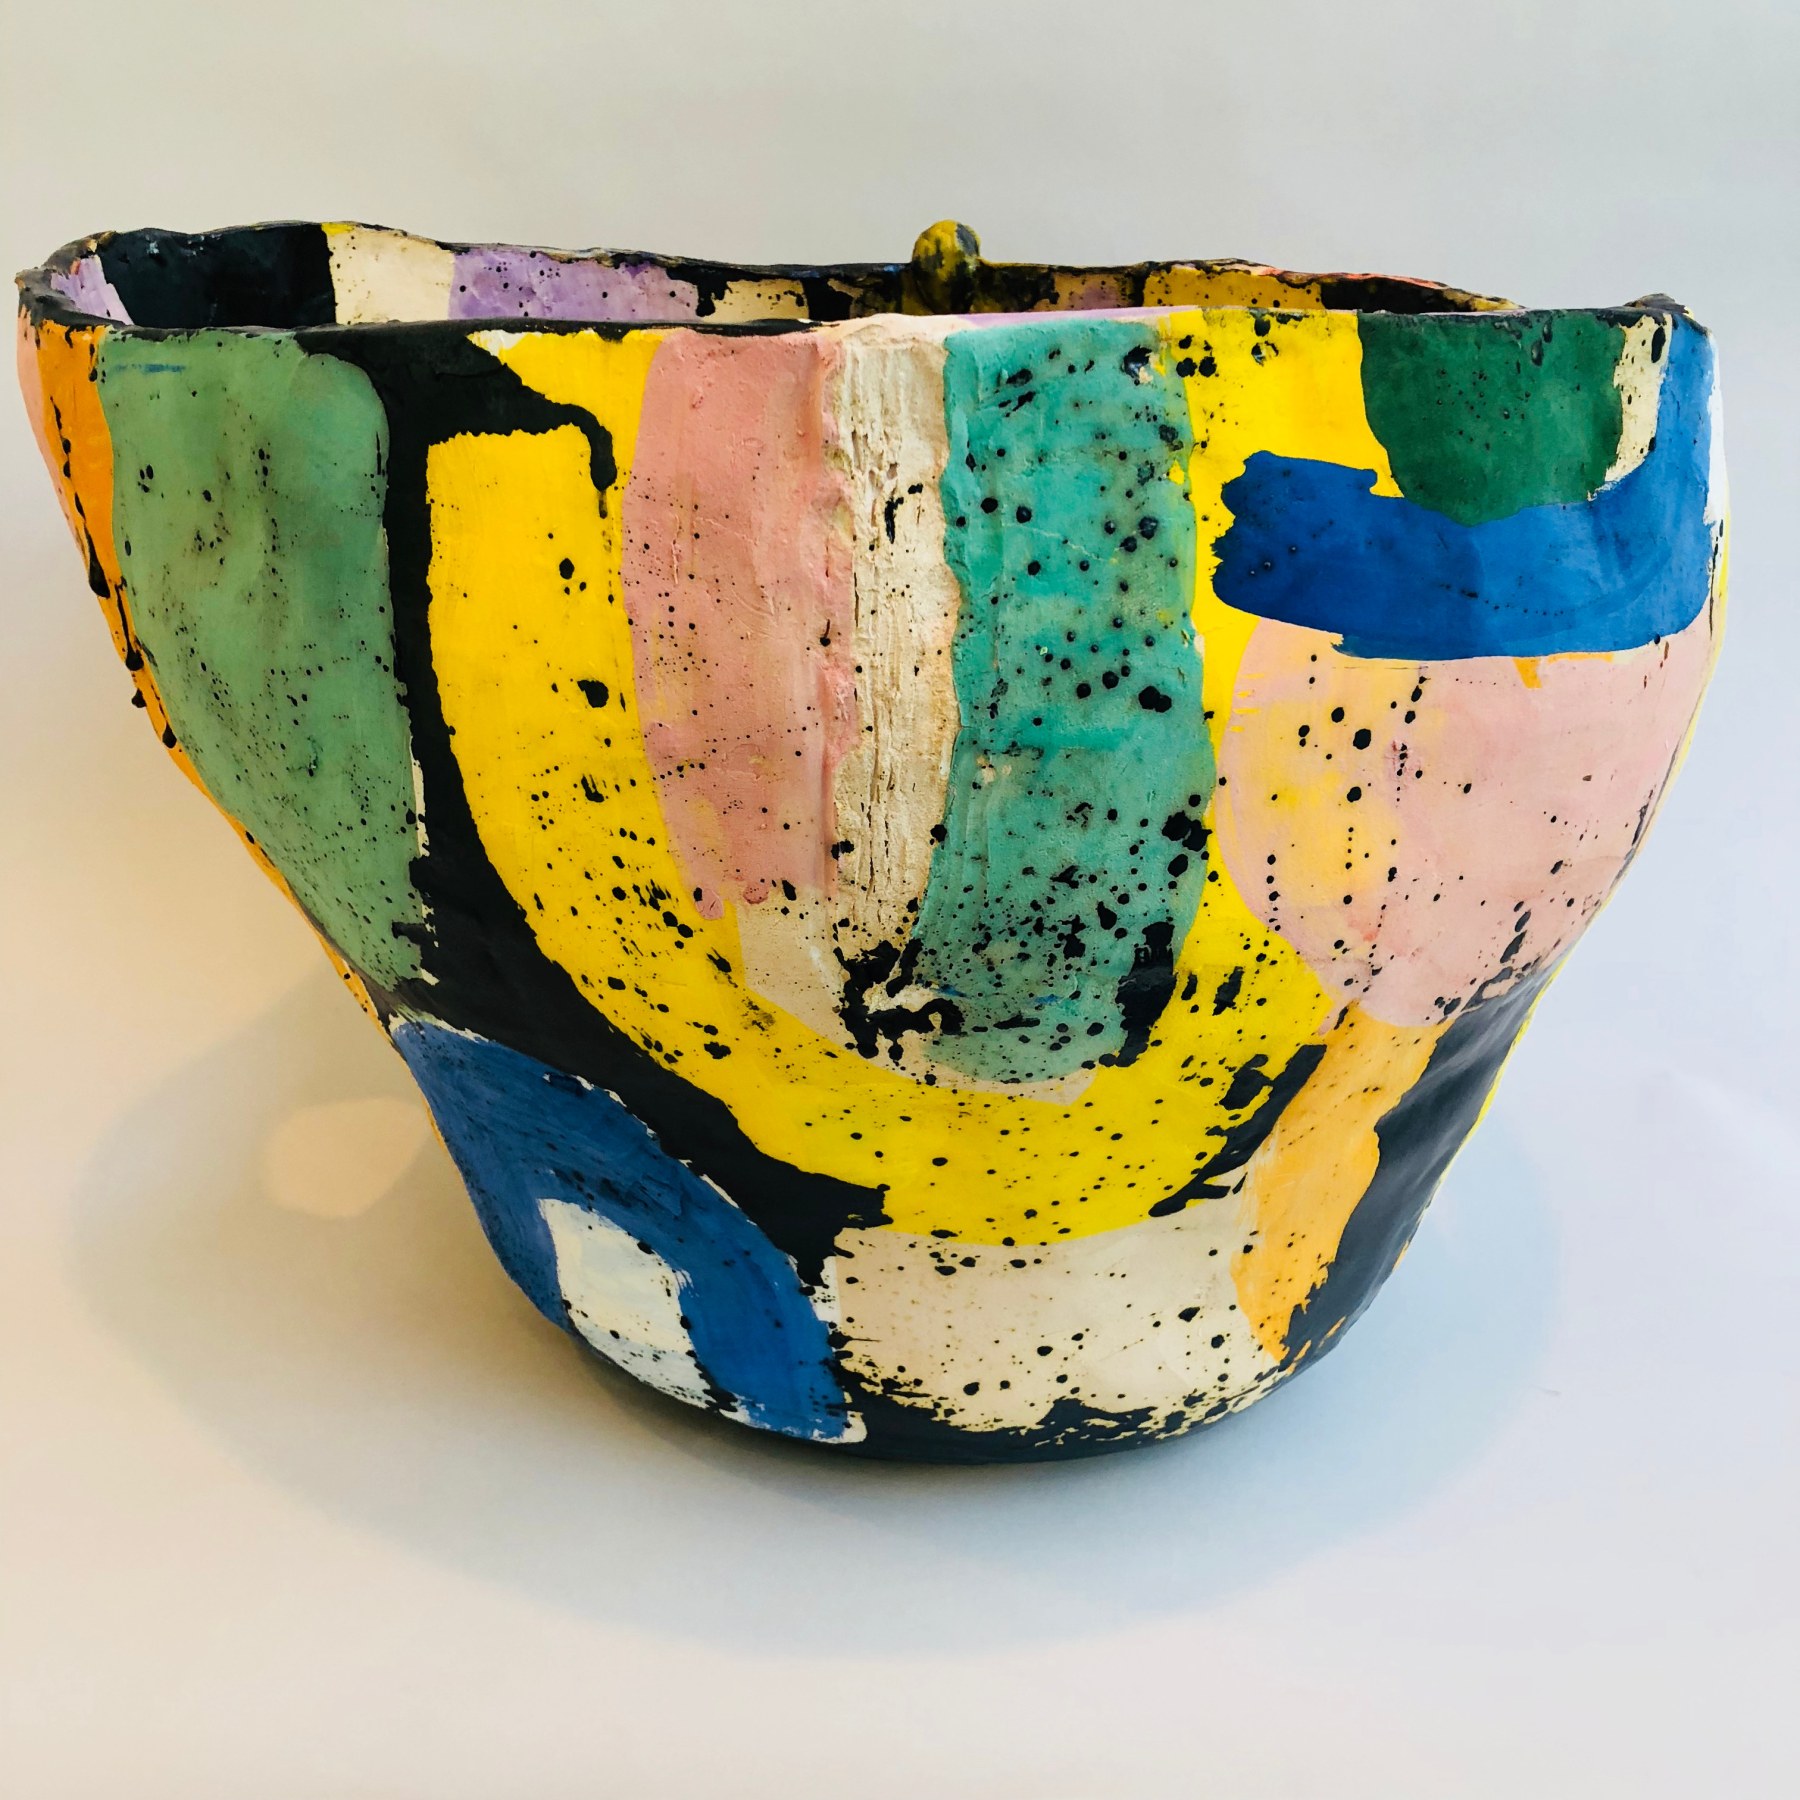 Multicolored Roger Herman ceramic vase